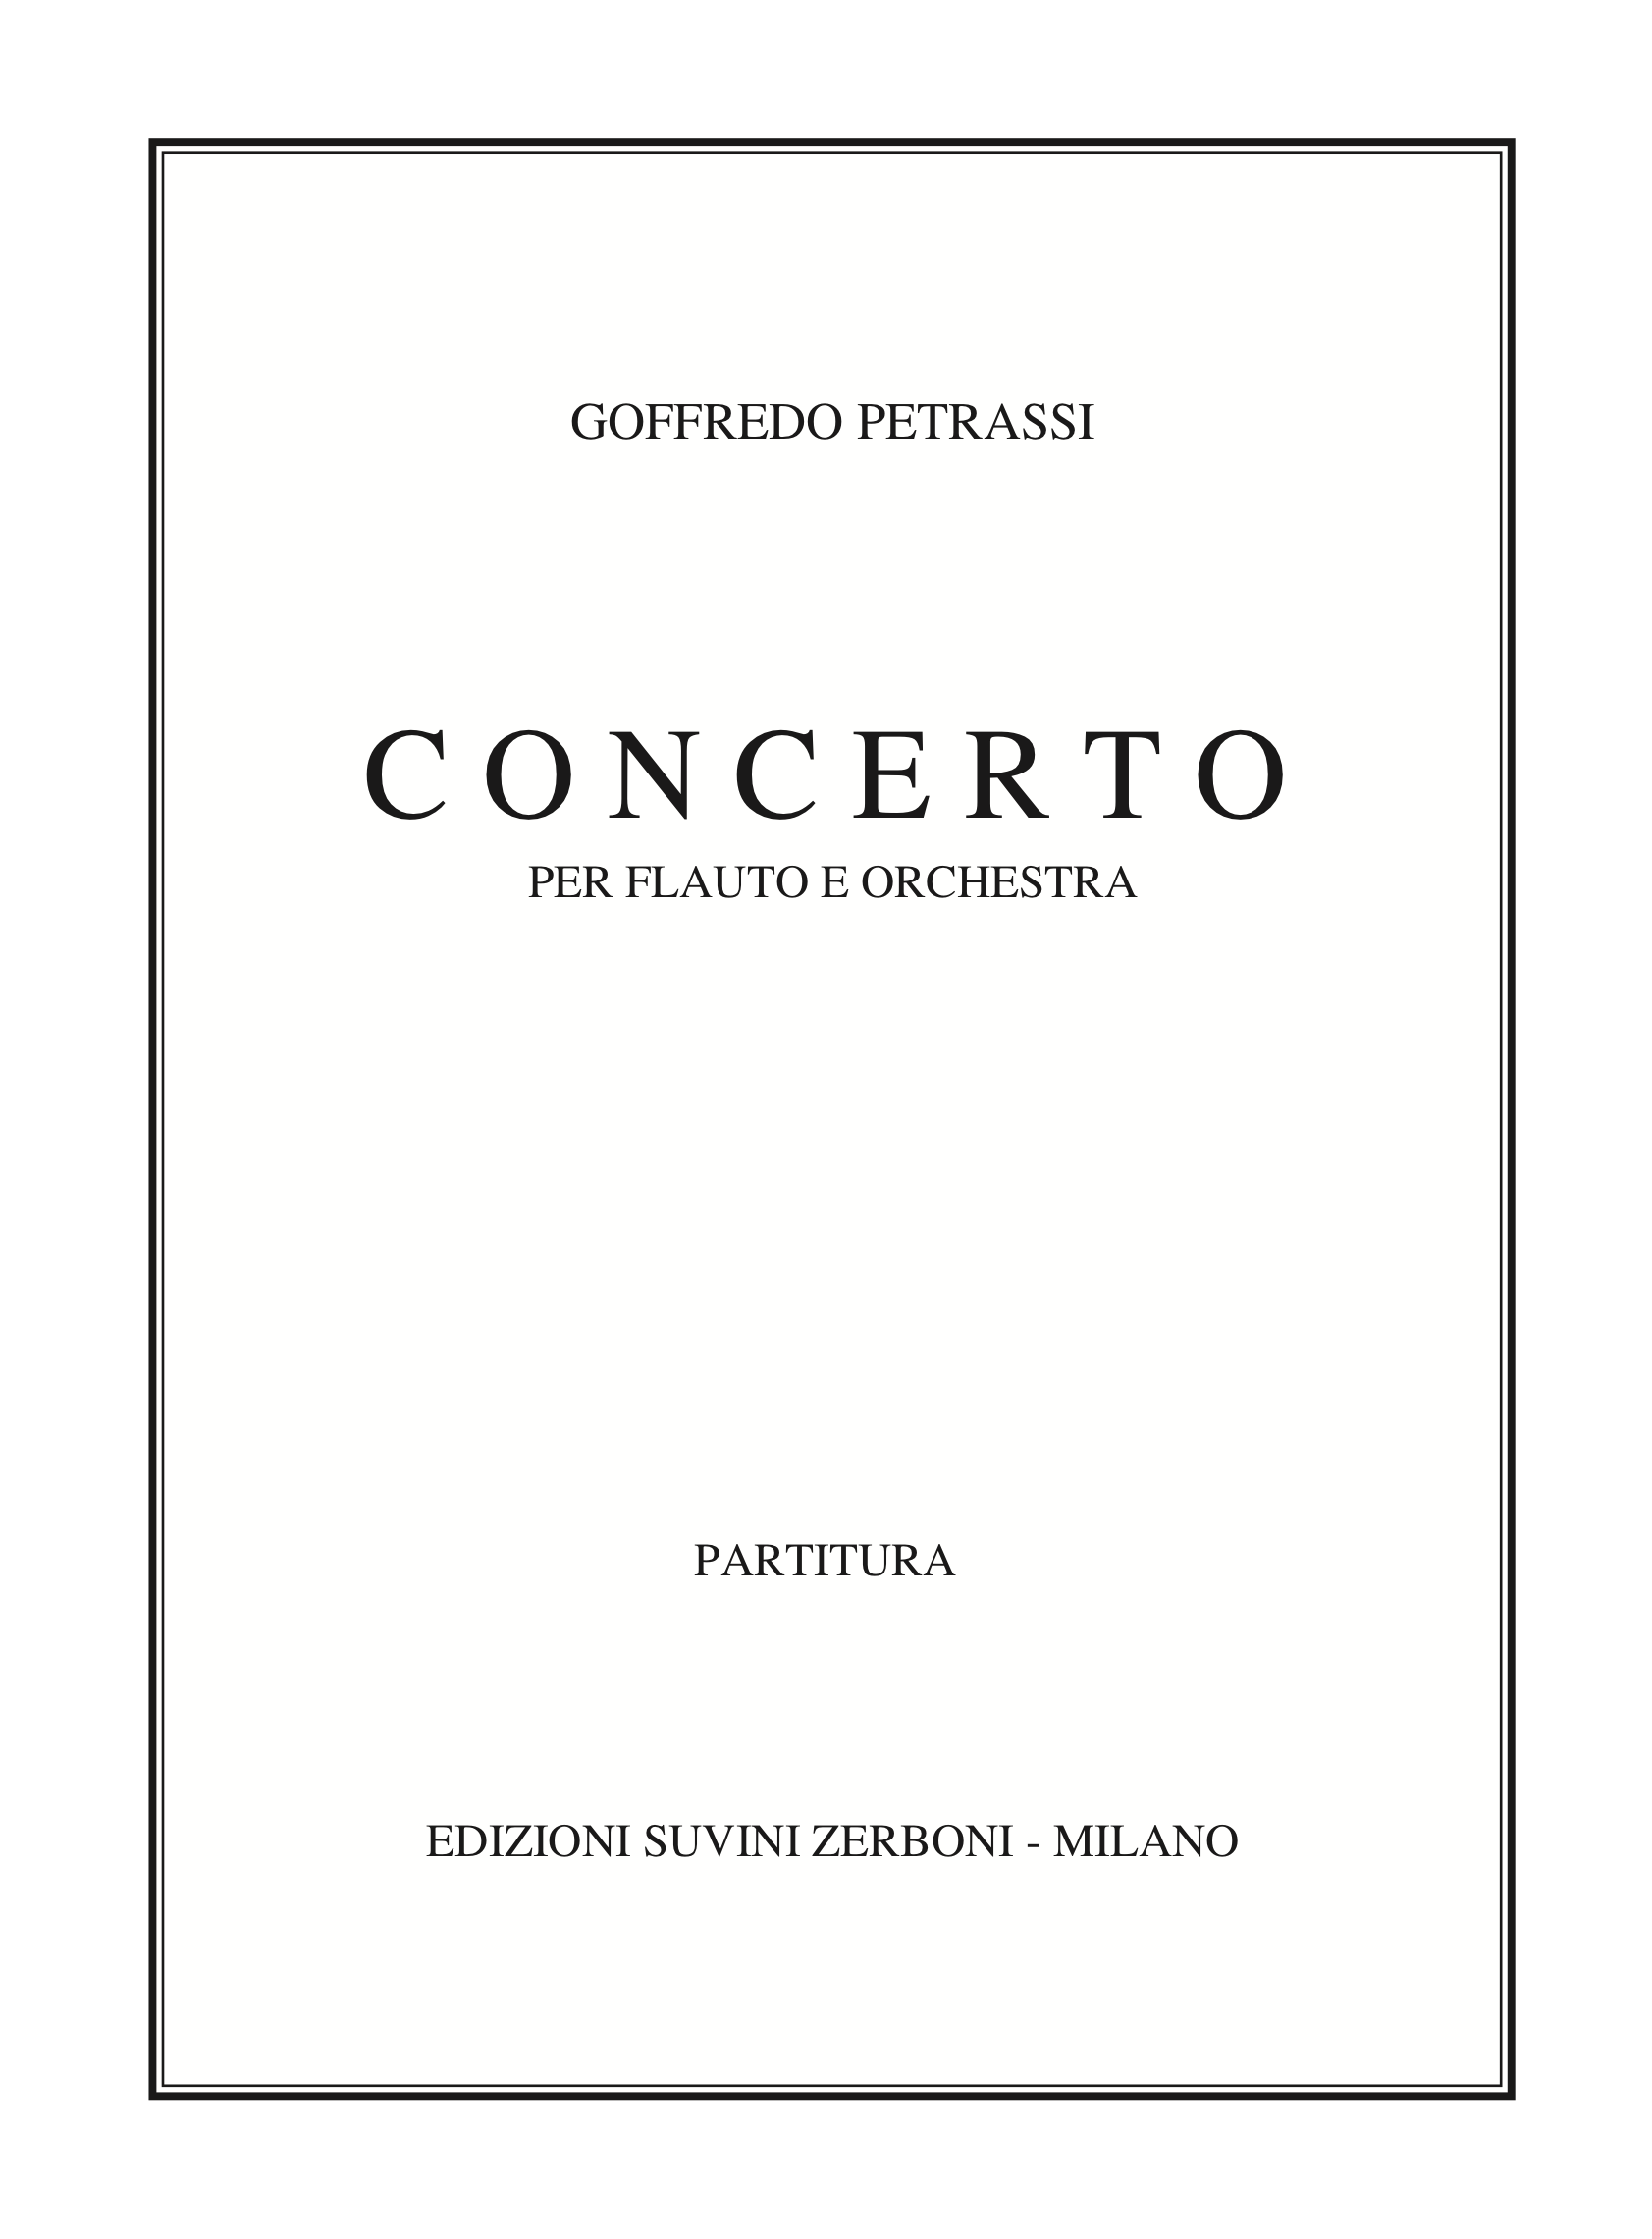 Concerto_per flauto e orchestra_Petrassi 1